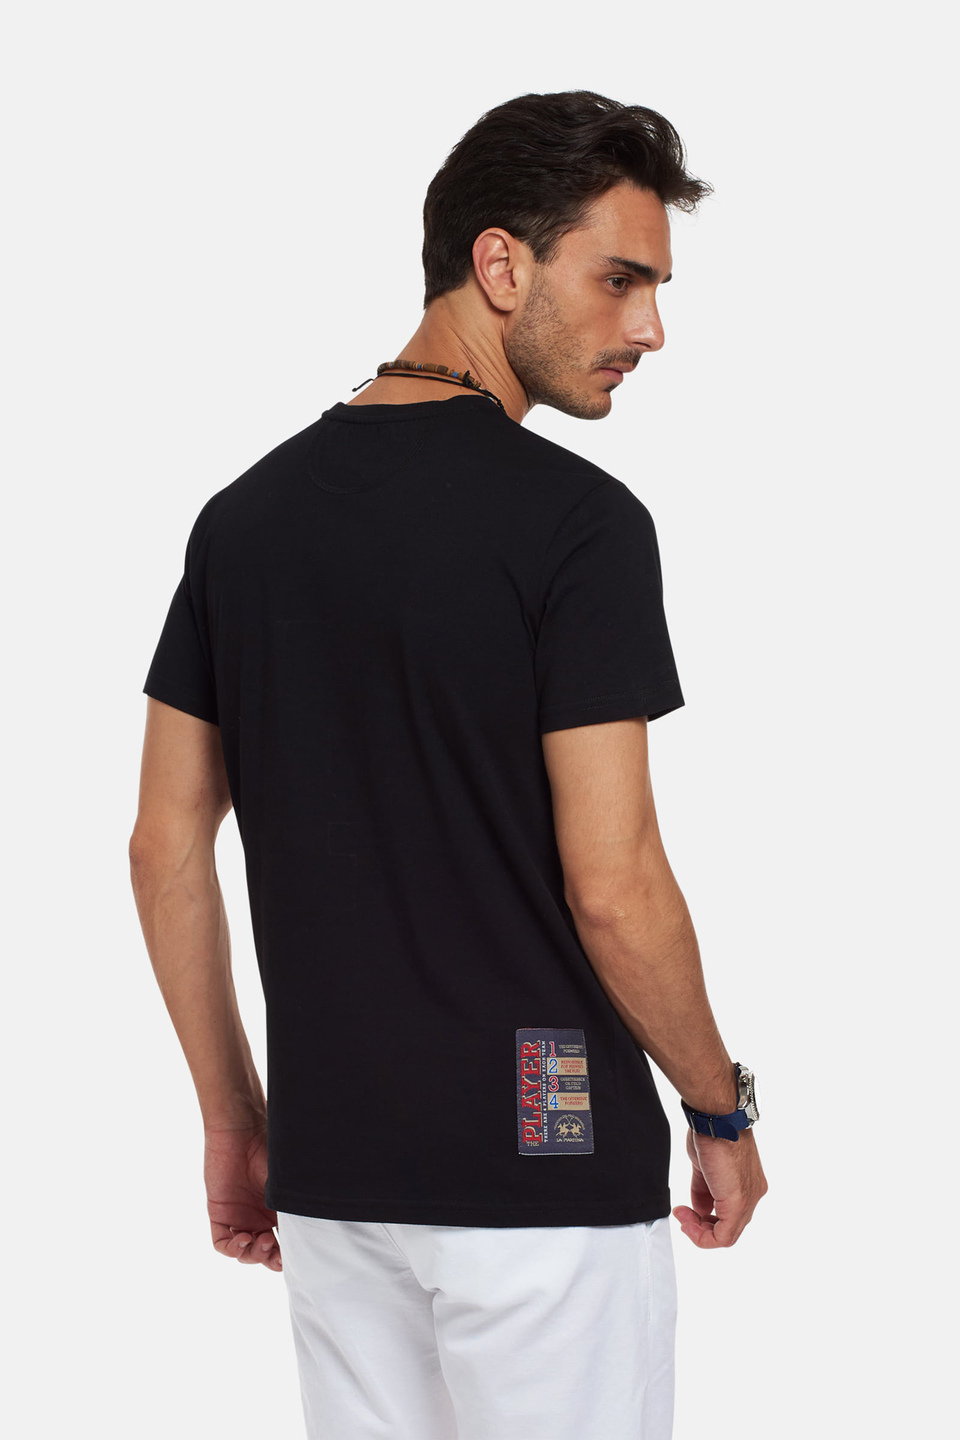 T-shirt in cotone 100% regular fit | La Martina - Official Online Shop